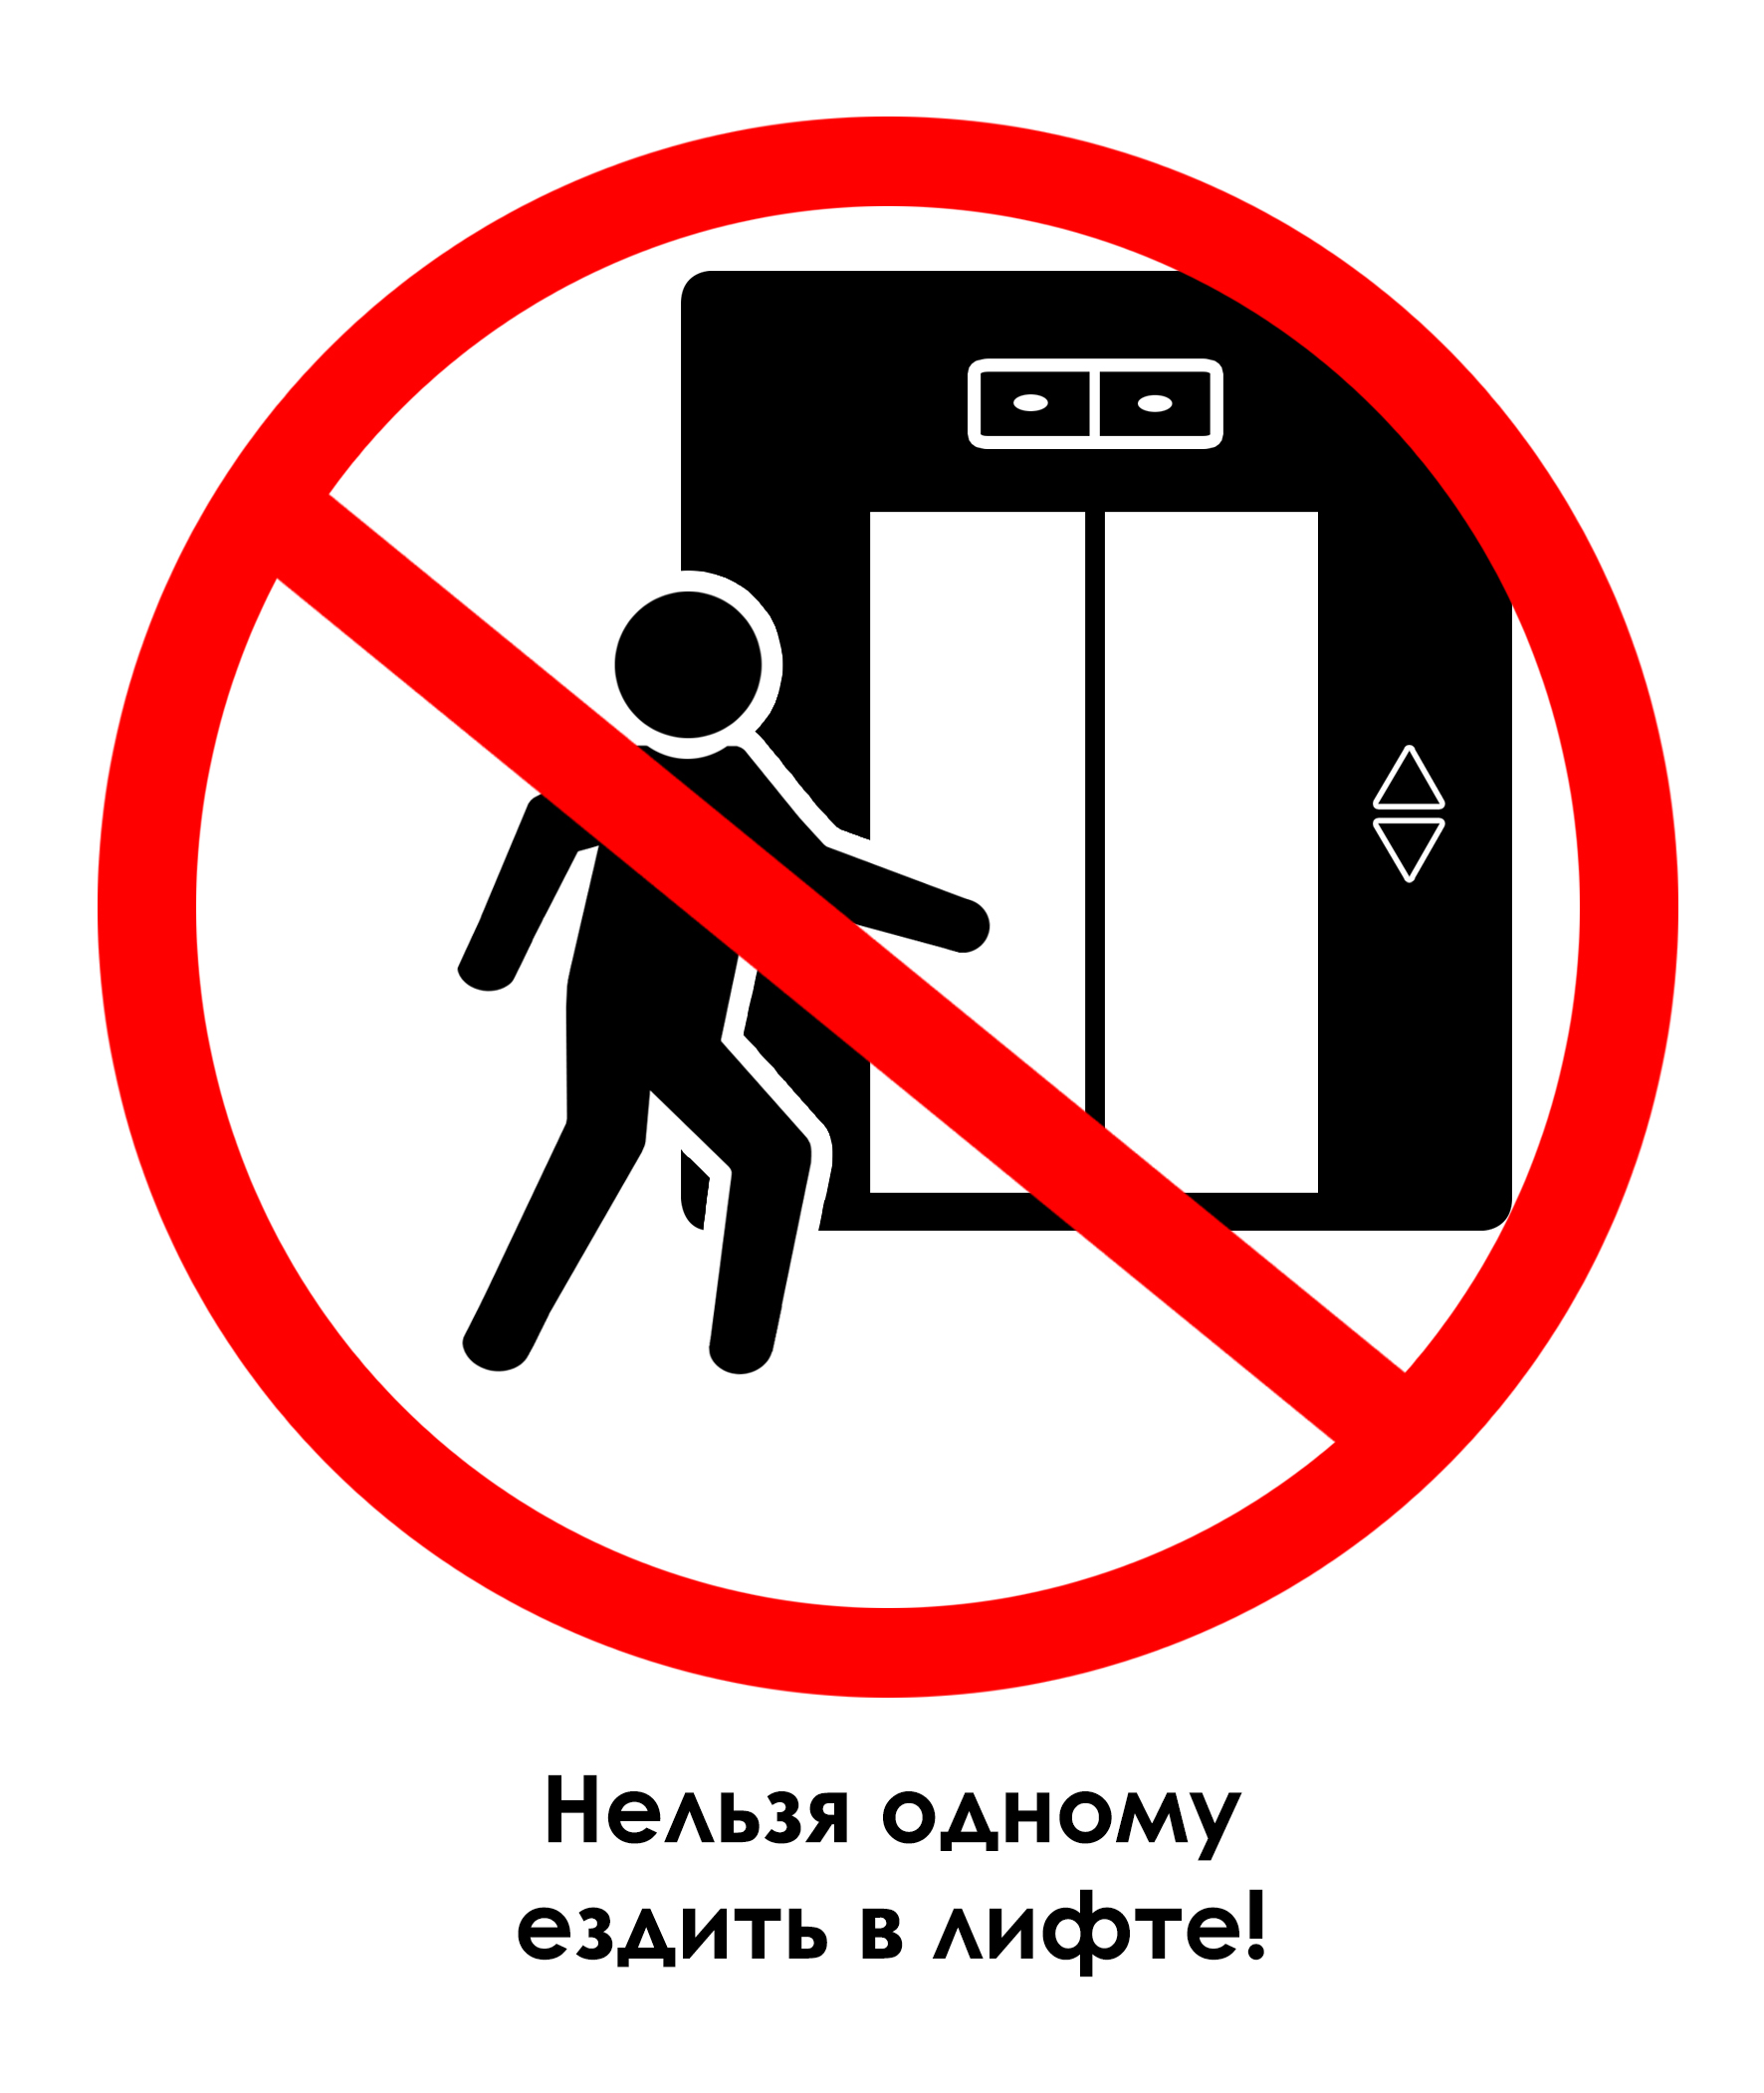 Нельзя неприятно. Знак нельзя. Знак лифт. Знаки безопасности в лифте. Знак не прислоняться к дверям.